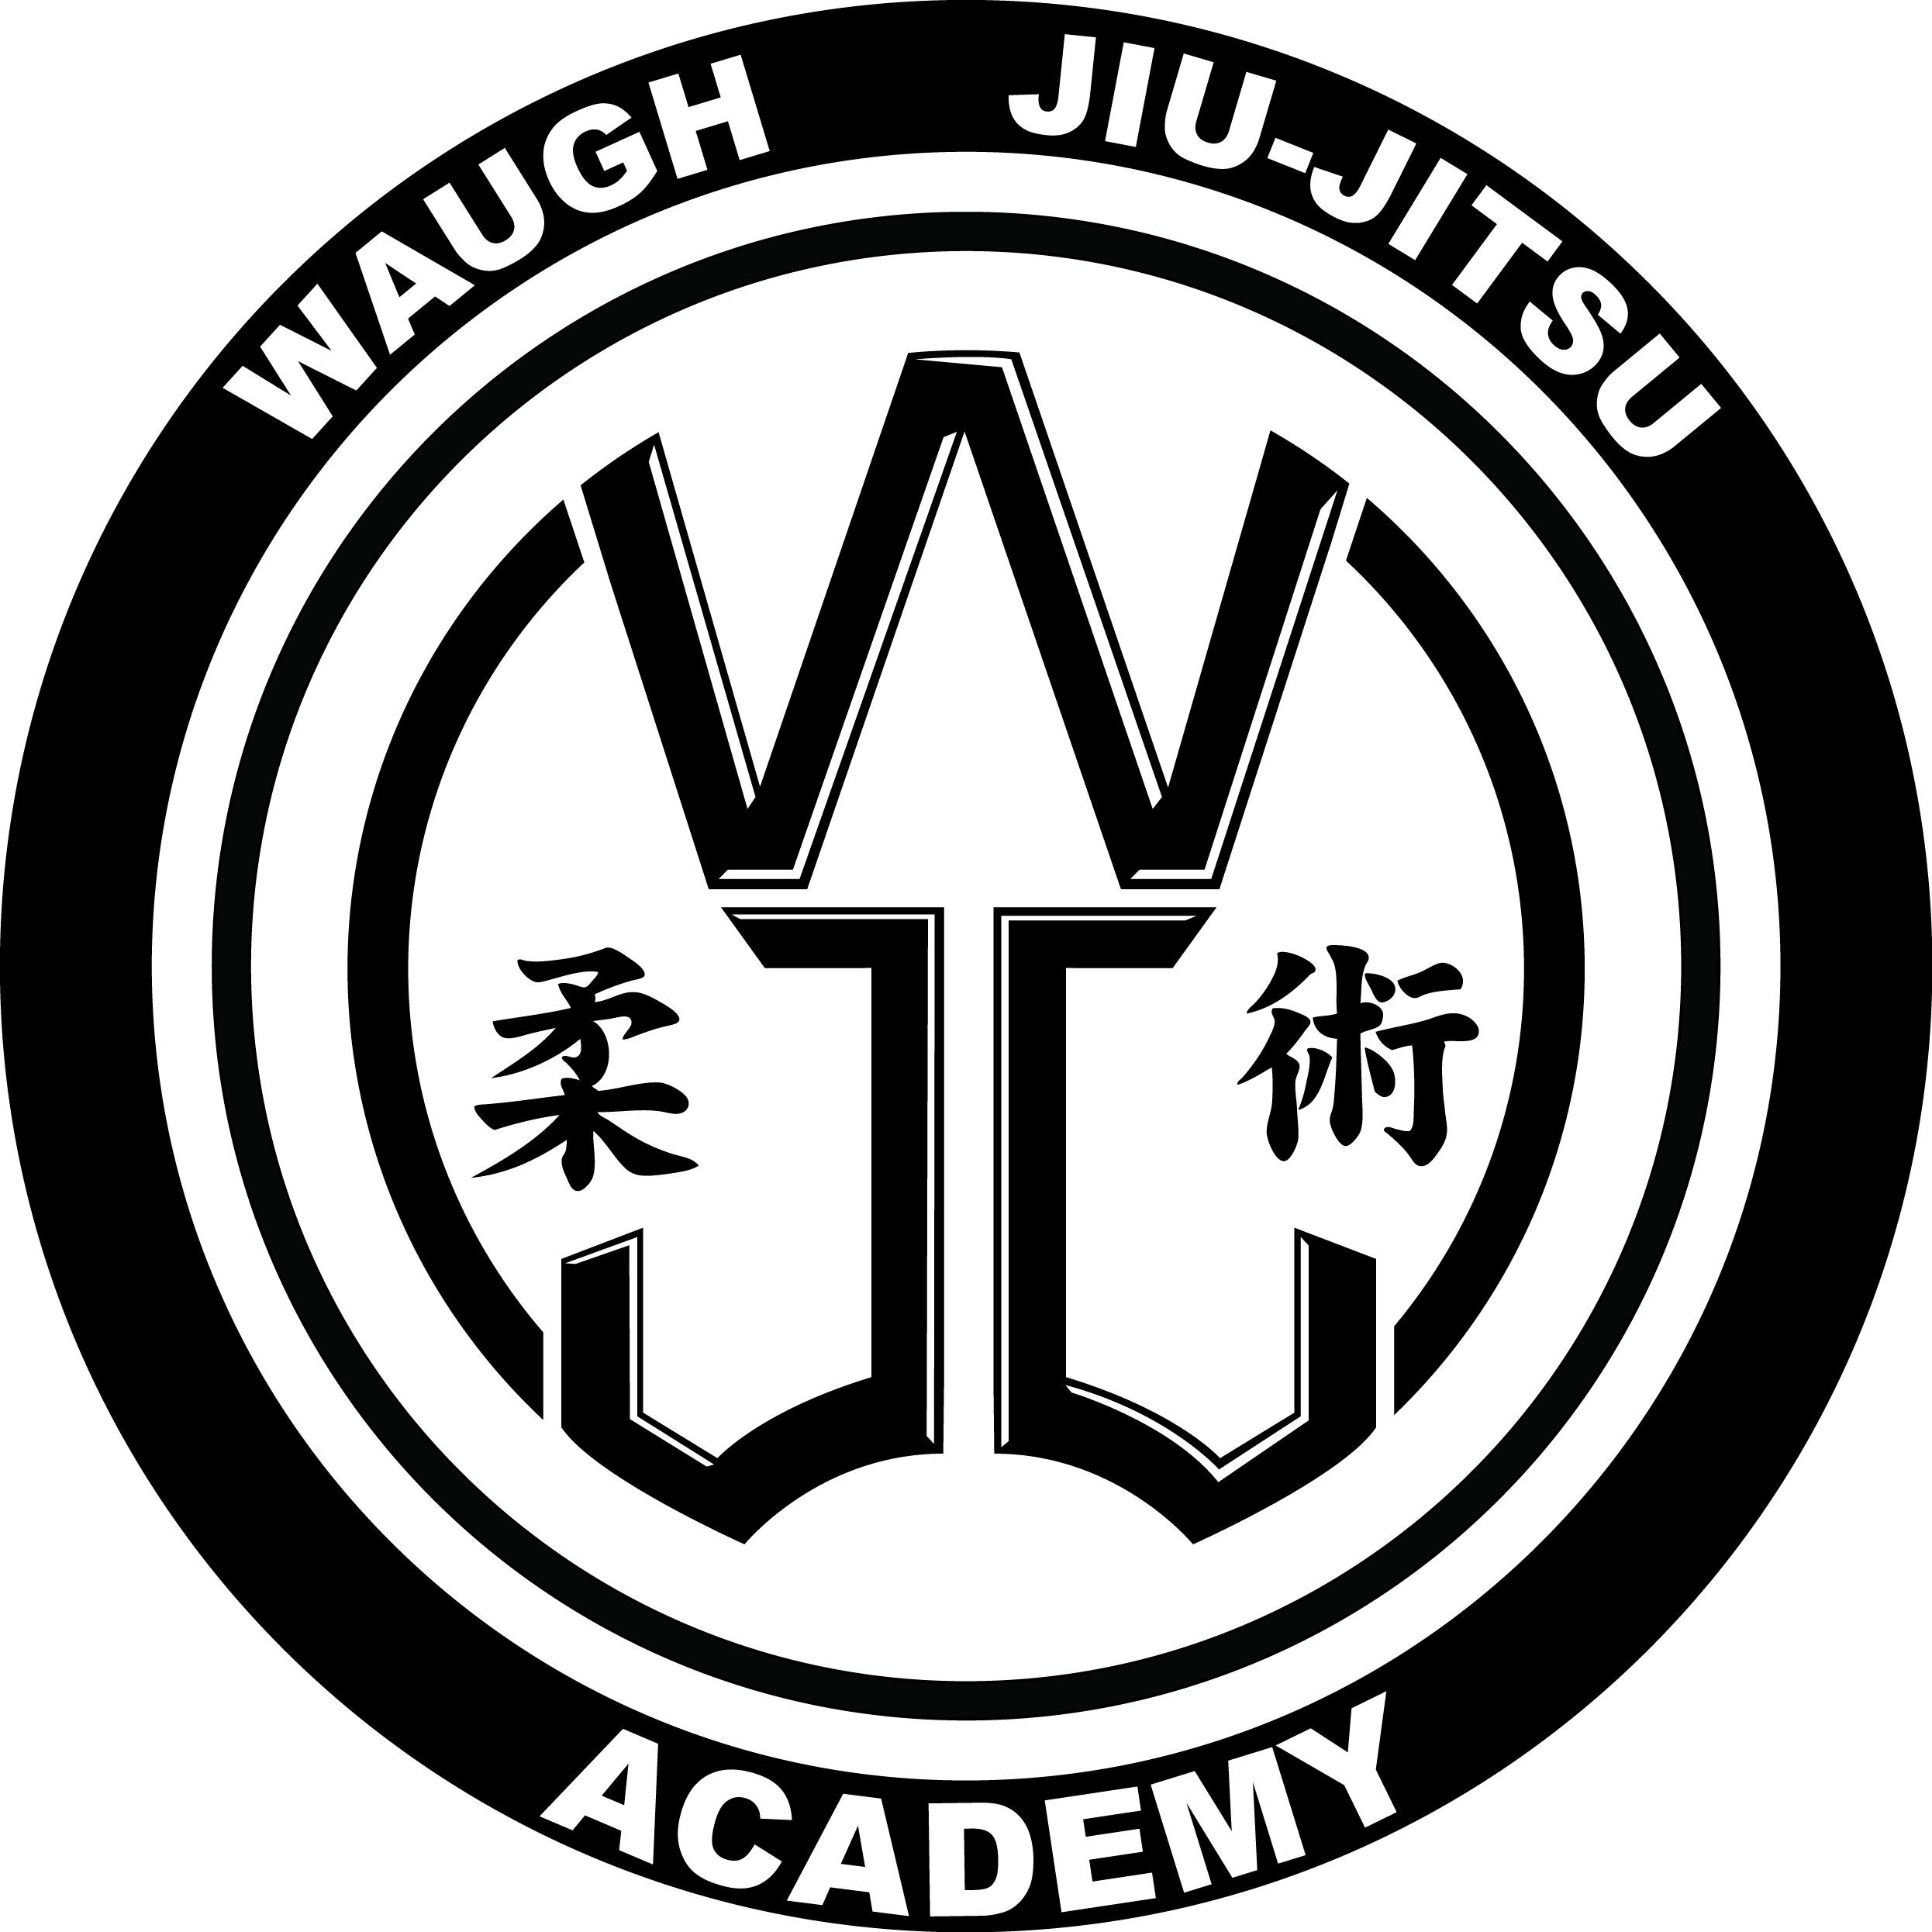 Waugh Jiu-Jitsu Academy Coupons near me in Arlington ...